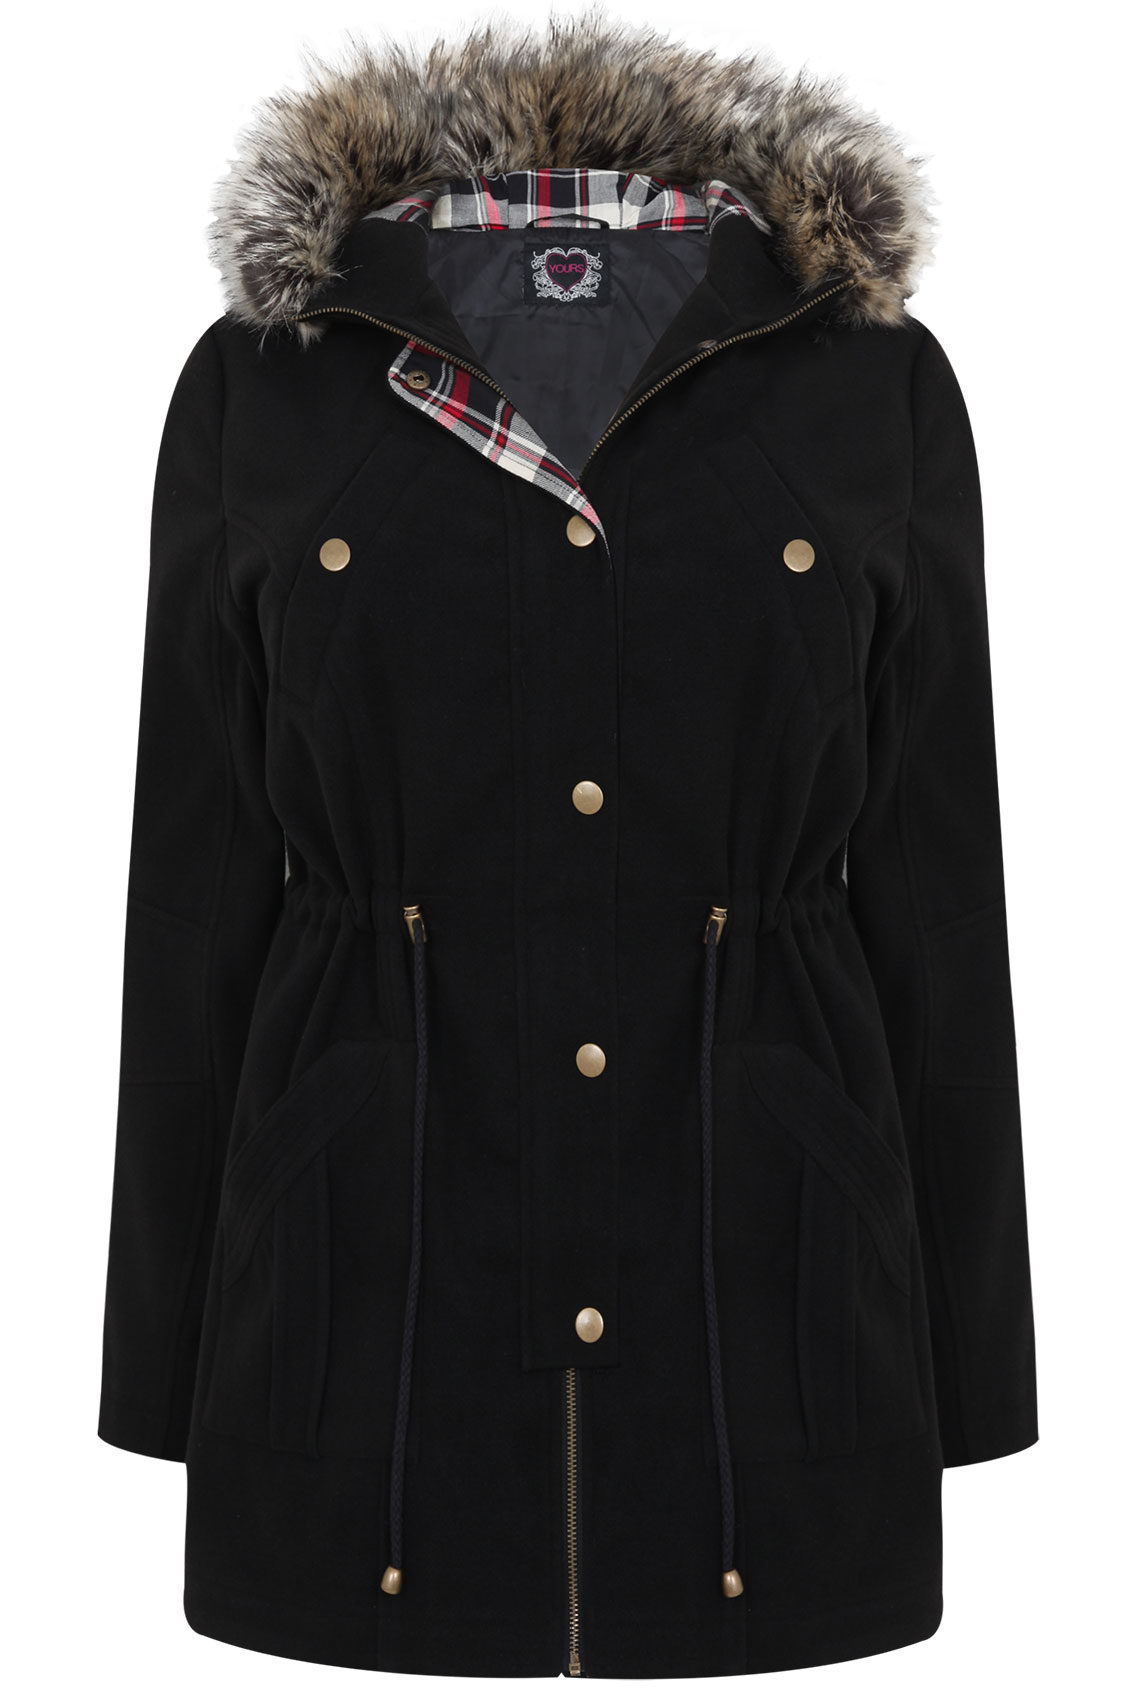 Black Velour Parka Coat With Fur Hood Plus size 16,18,20,22,24,26,28,30,32